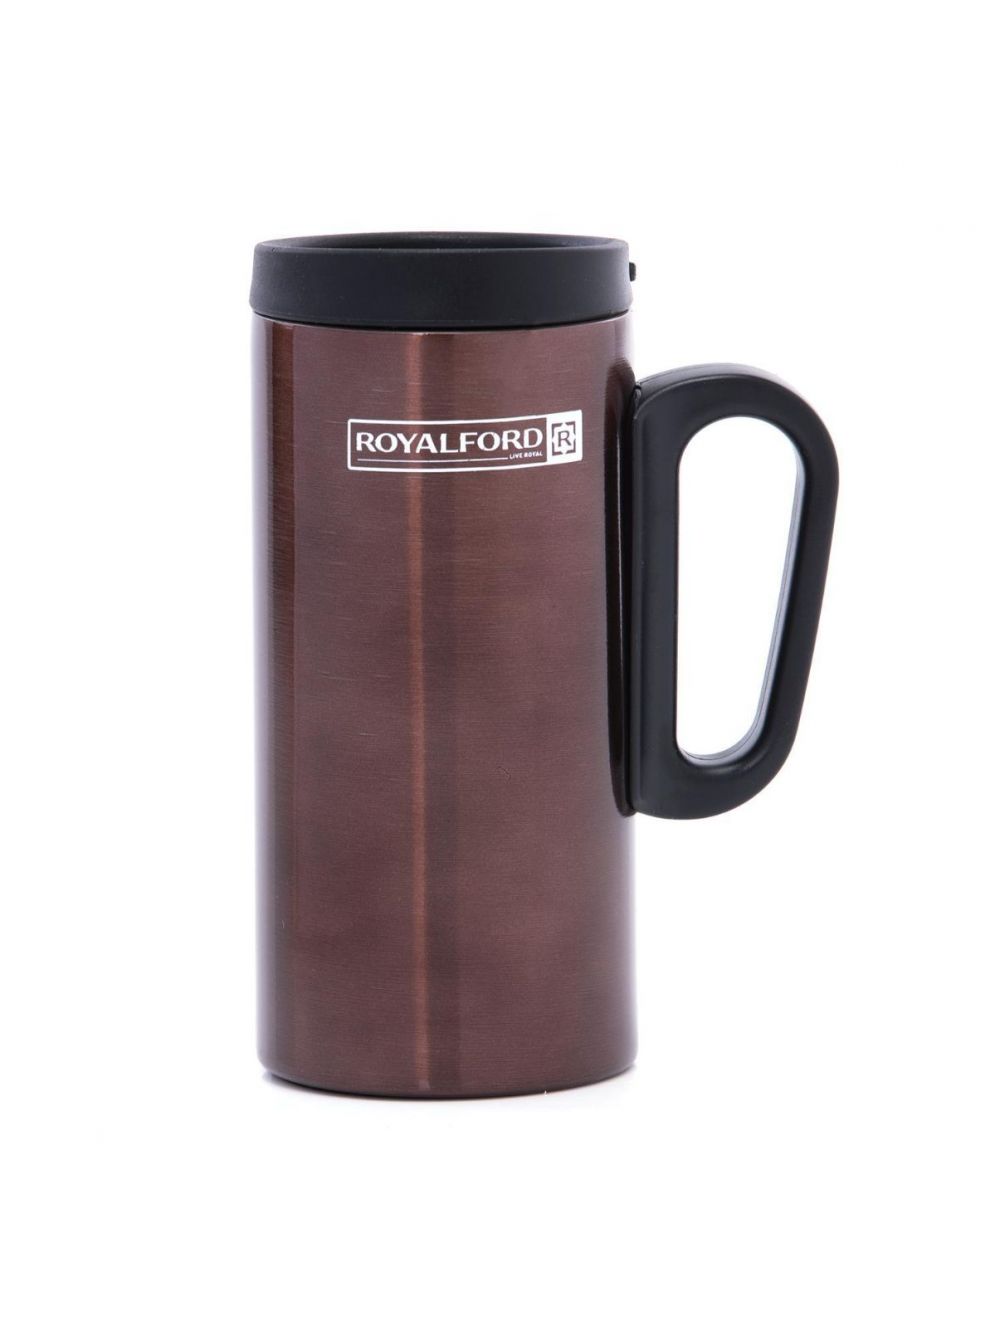 Royalford RFU9037 Coffee Mug 250 ml